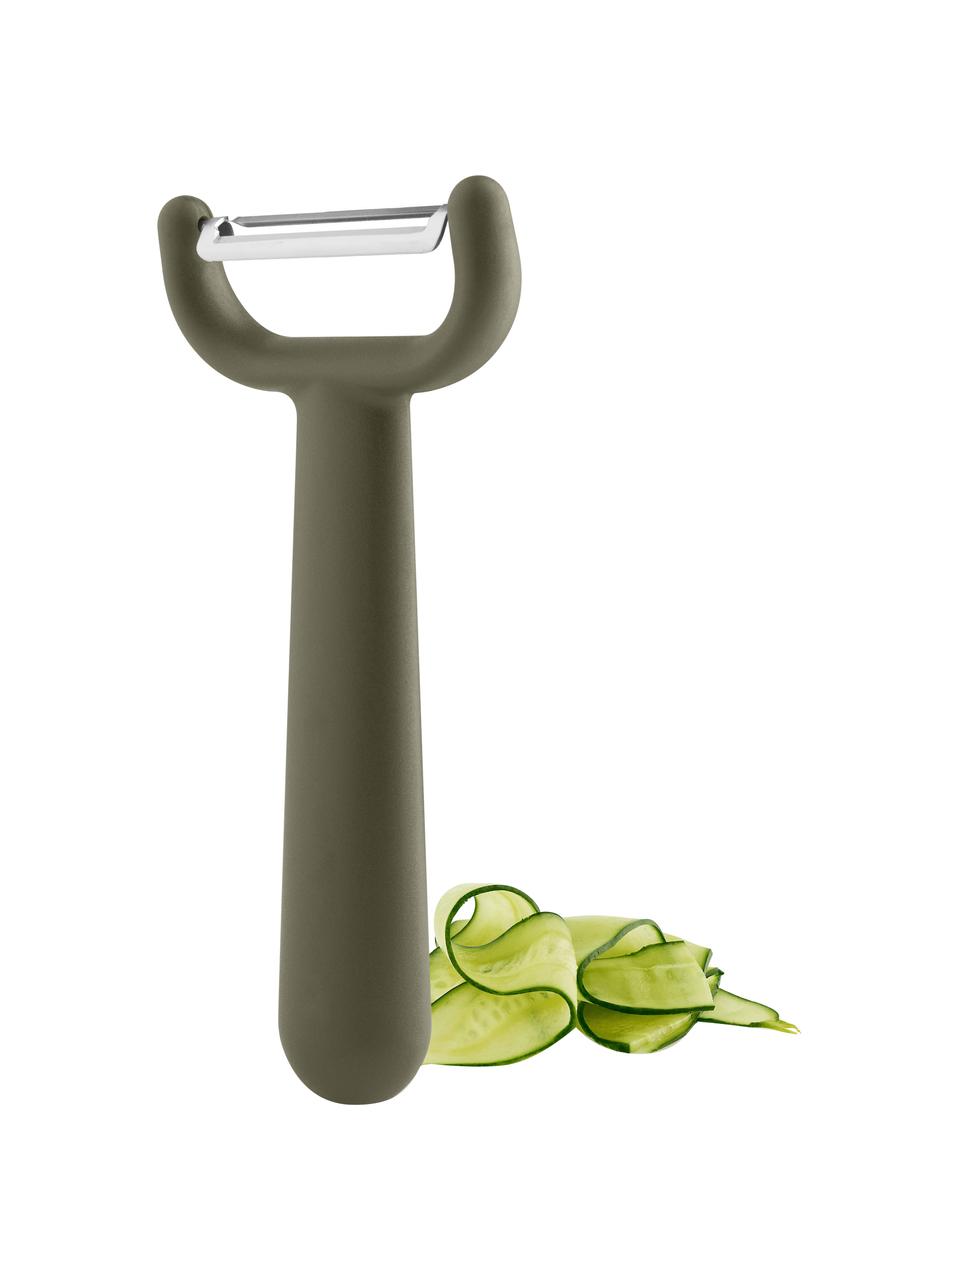 Pela verdure Green Tool, Plastica, acciaio inossidabile, Verde, argentato, Lung. 15 cm